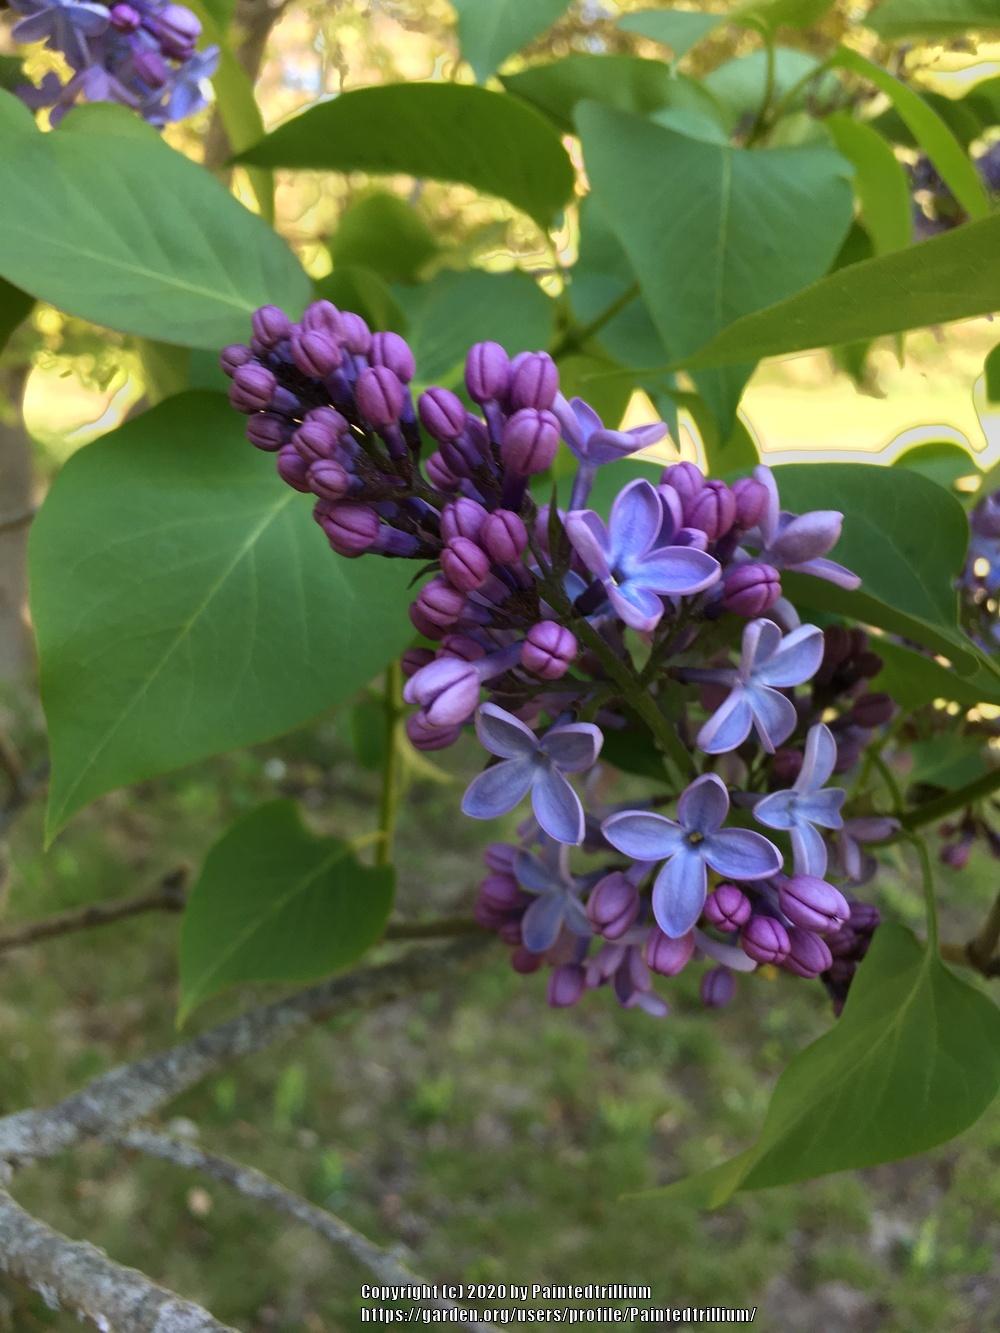 Photo of Common Lilac (Syringa vulgaris 'Wedgwood Blue') uploaded by Paintedtrillium